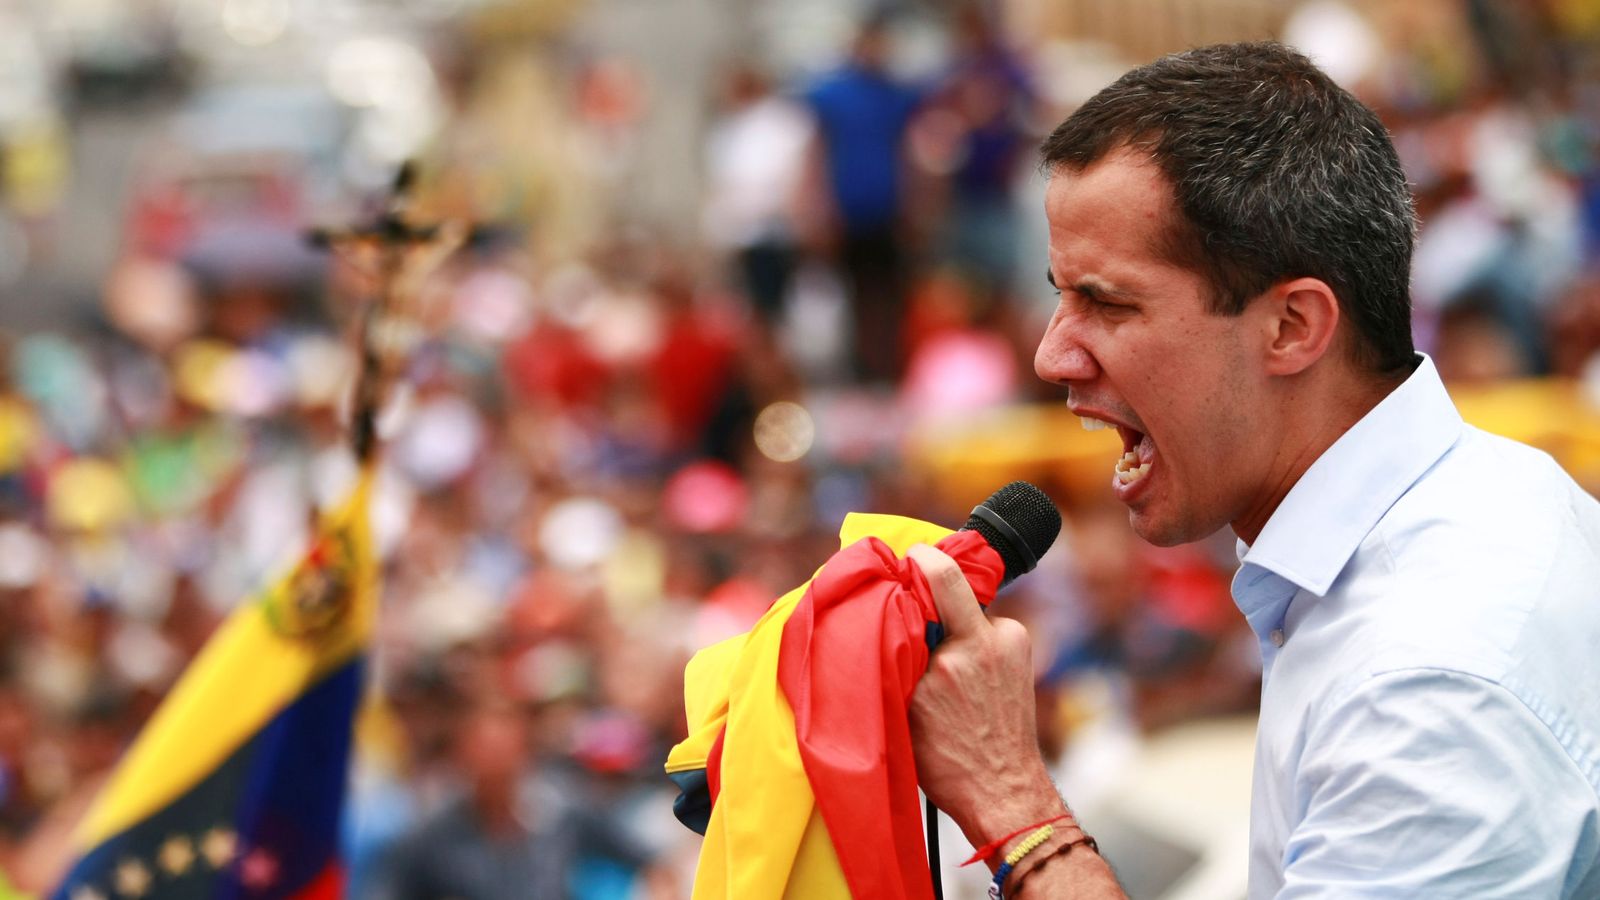 Foto: El líder de la oposición venezolana Juan Guaidó durante un acto en Cabimas, Venezuela. (Reuters)